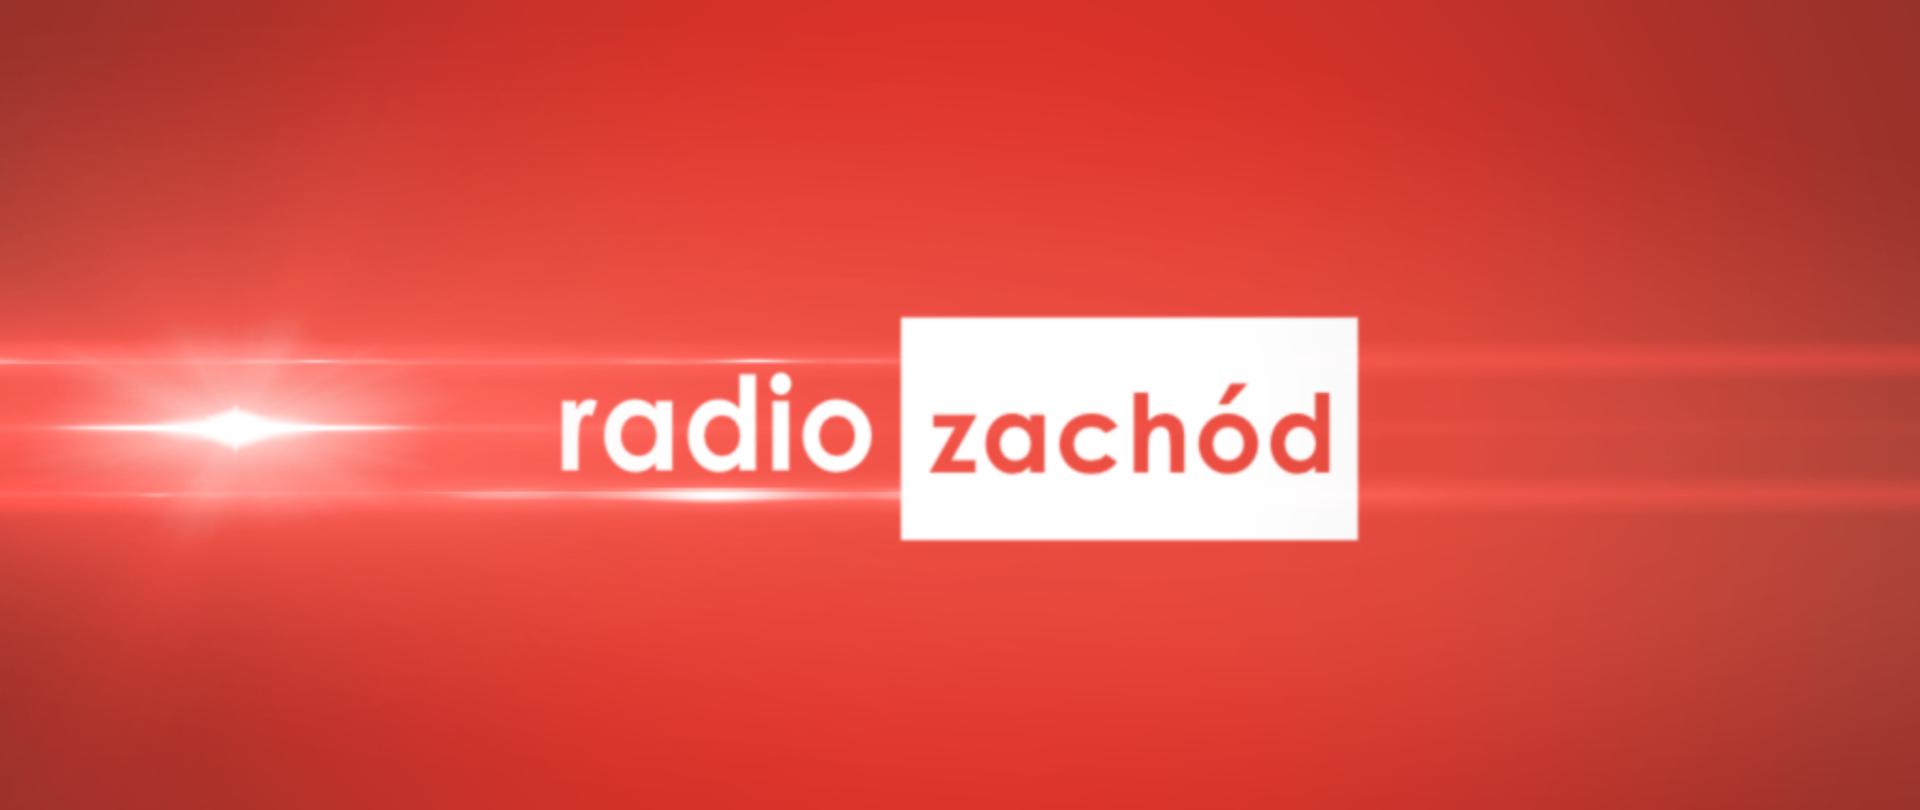 Grafika na czerwonym tle z logotypem Radio Zachód